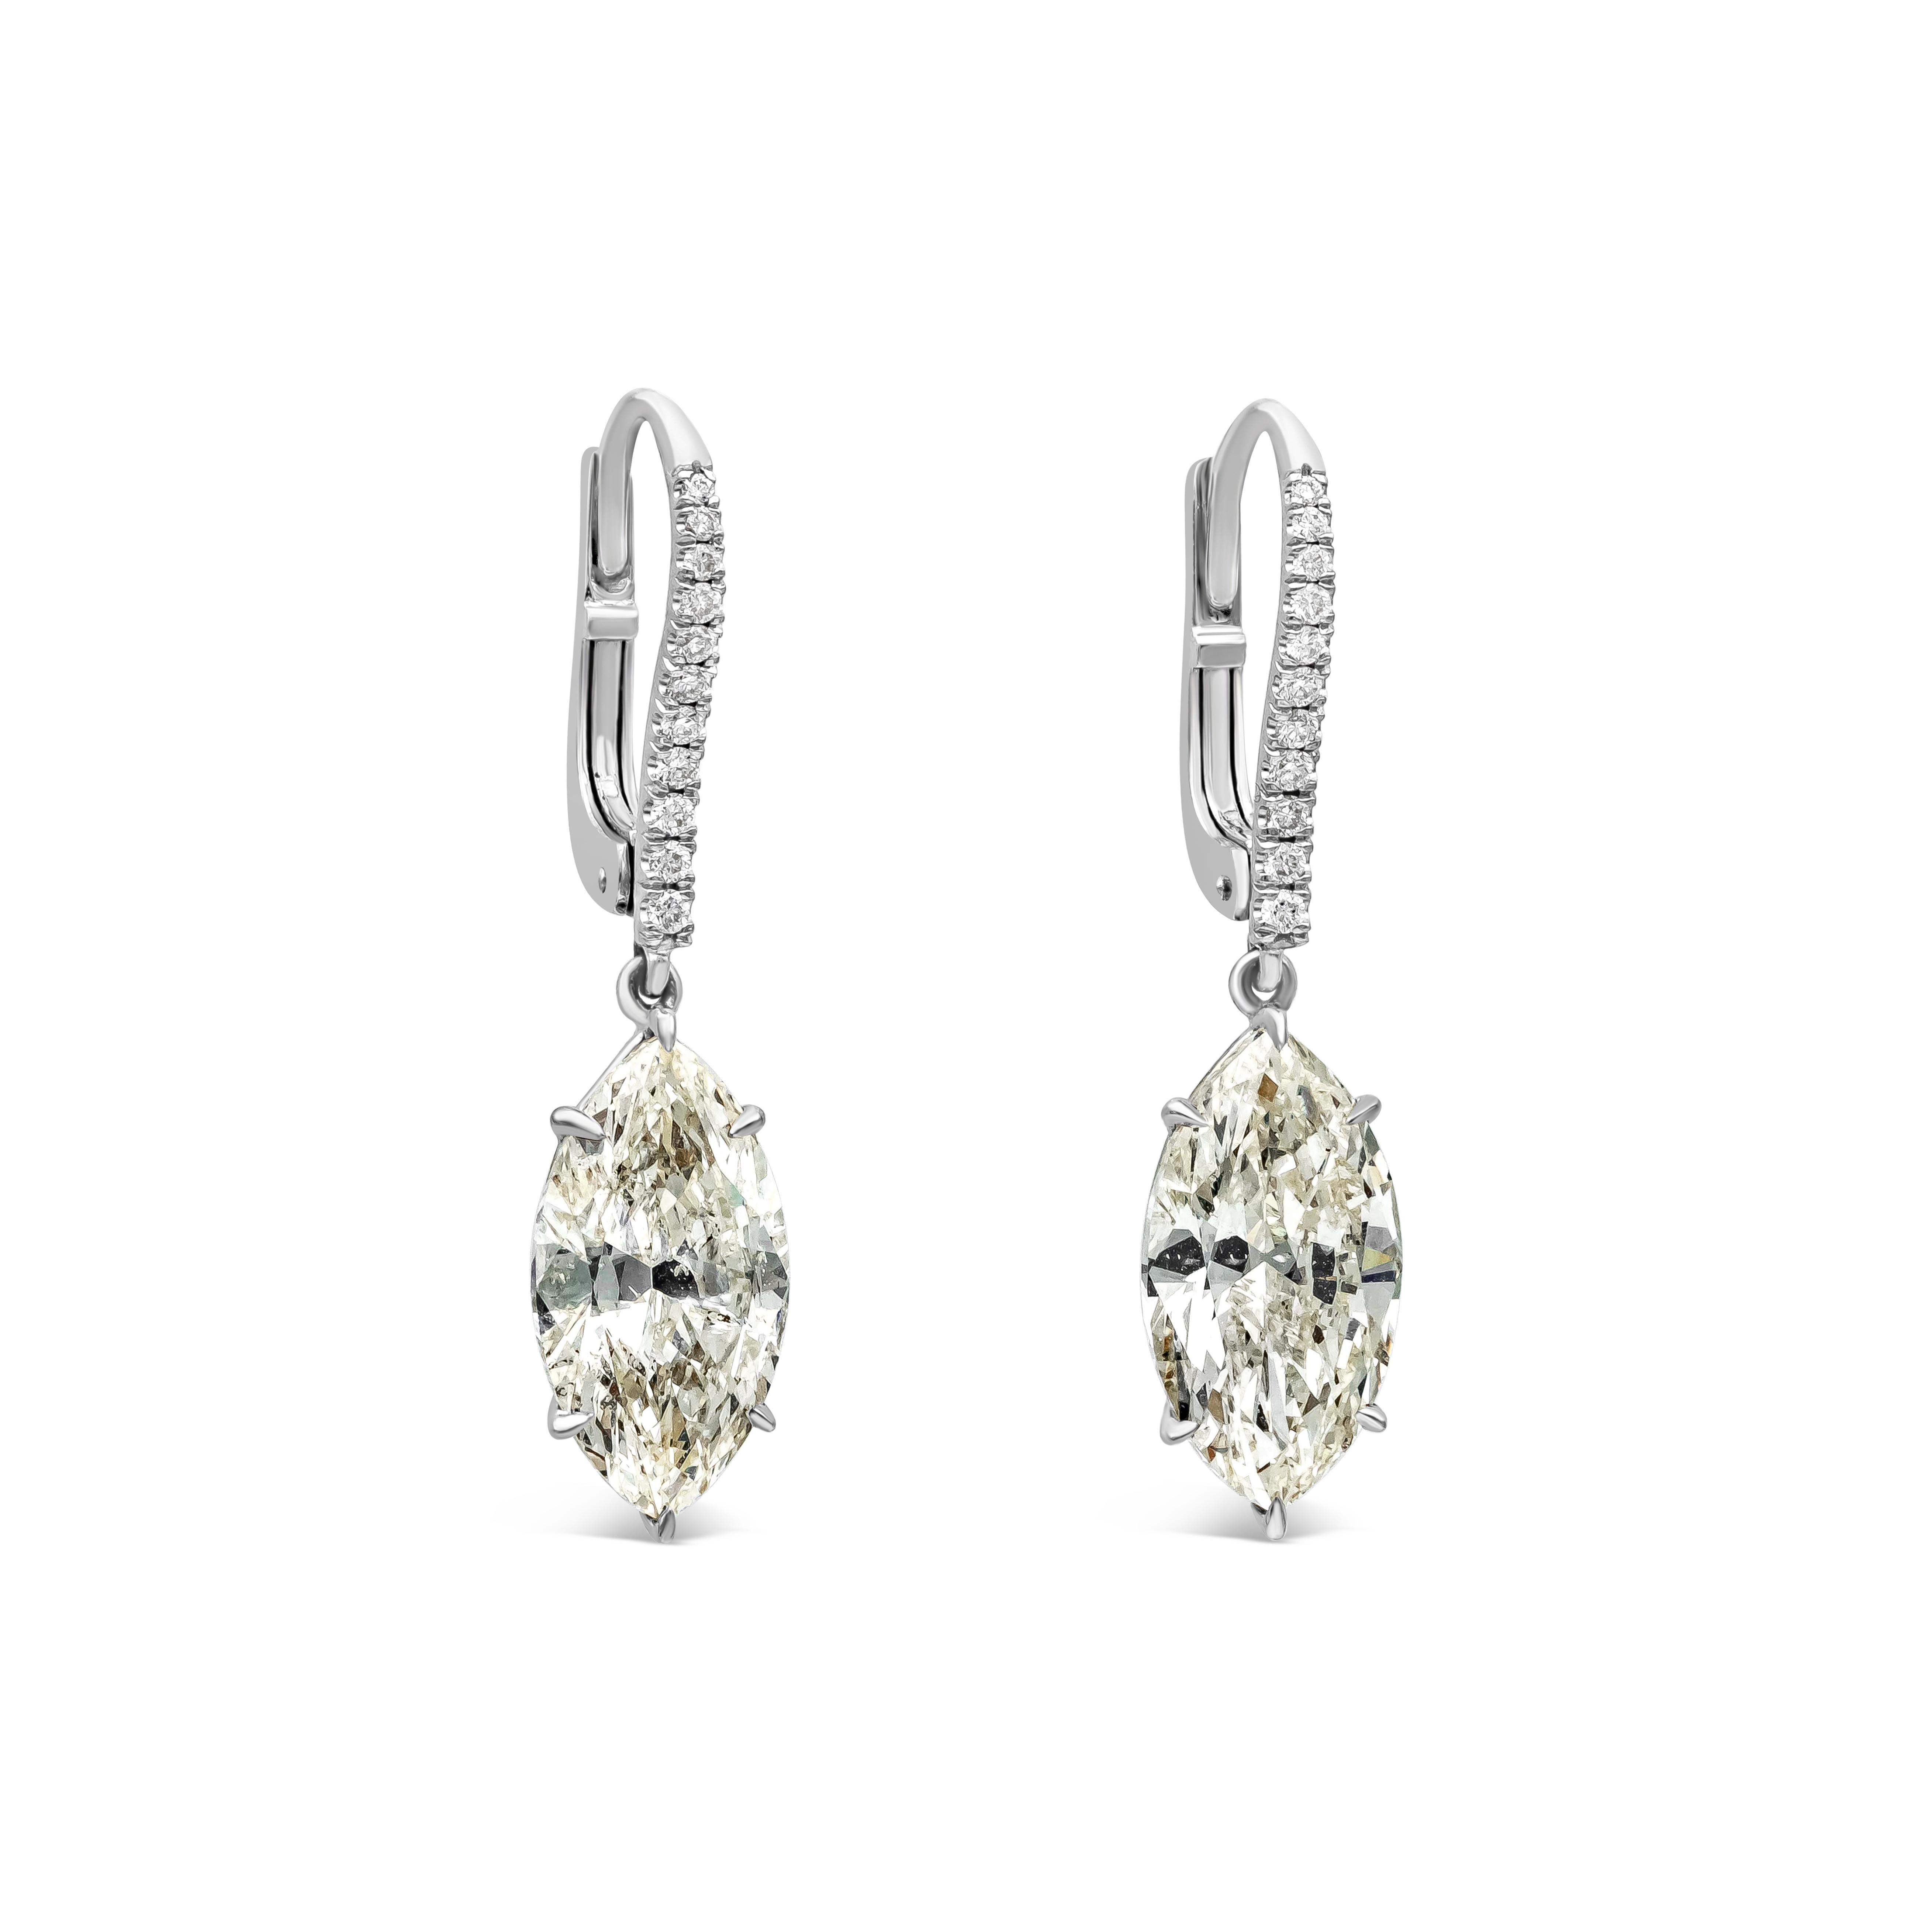 Dieses wunderschöne Paar Ohrhänger präsentiert zwei Diamanten im Marquise-Schliff mit einem Gesamtgewicht von 6,69 Karat, Farbe L, Reinheit SI3-SI1. Beide hängen an einem mit runden Brillanten besetzten Hebel. 22 runde Brillanten wiegen insgesamt